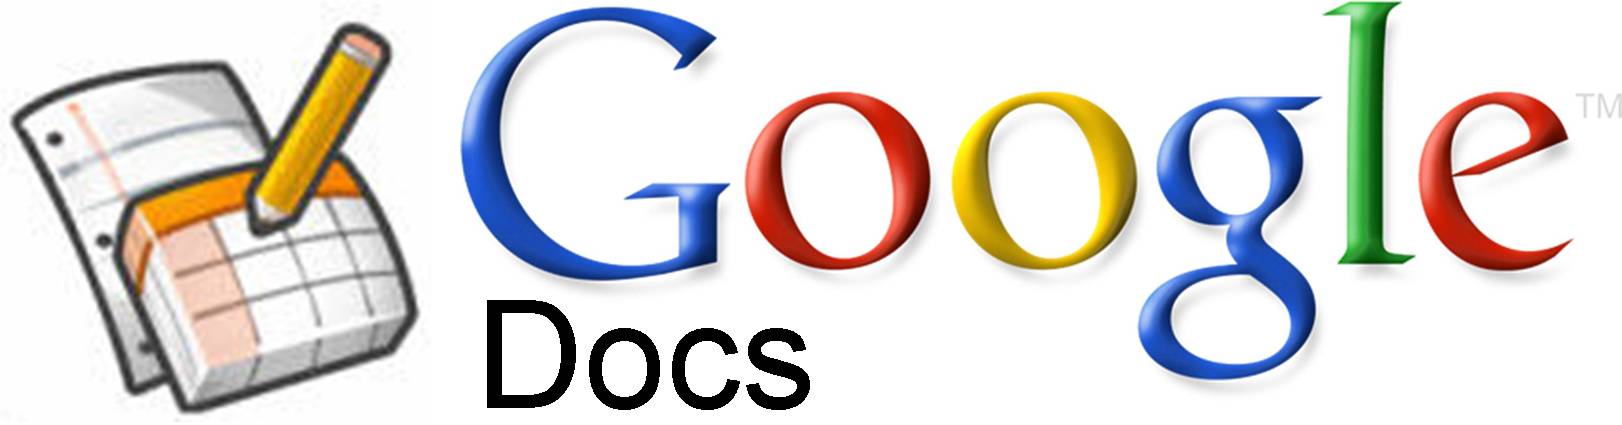 Https docs go. Google документы. Google документы картинки. Гугл ДОКС логотип. Гугл документы лого.